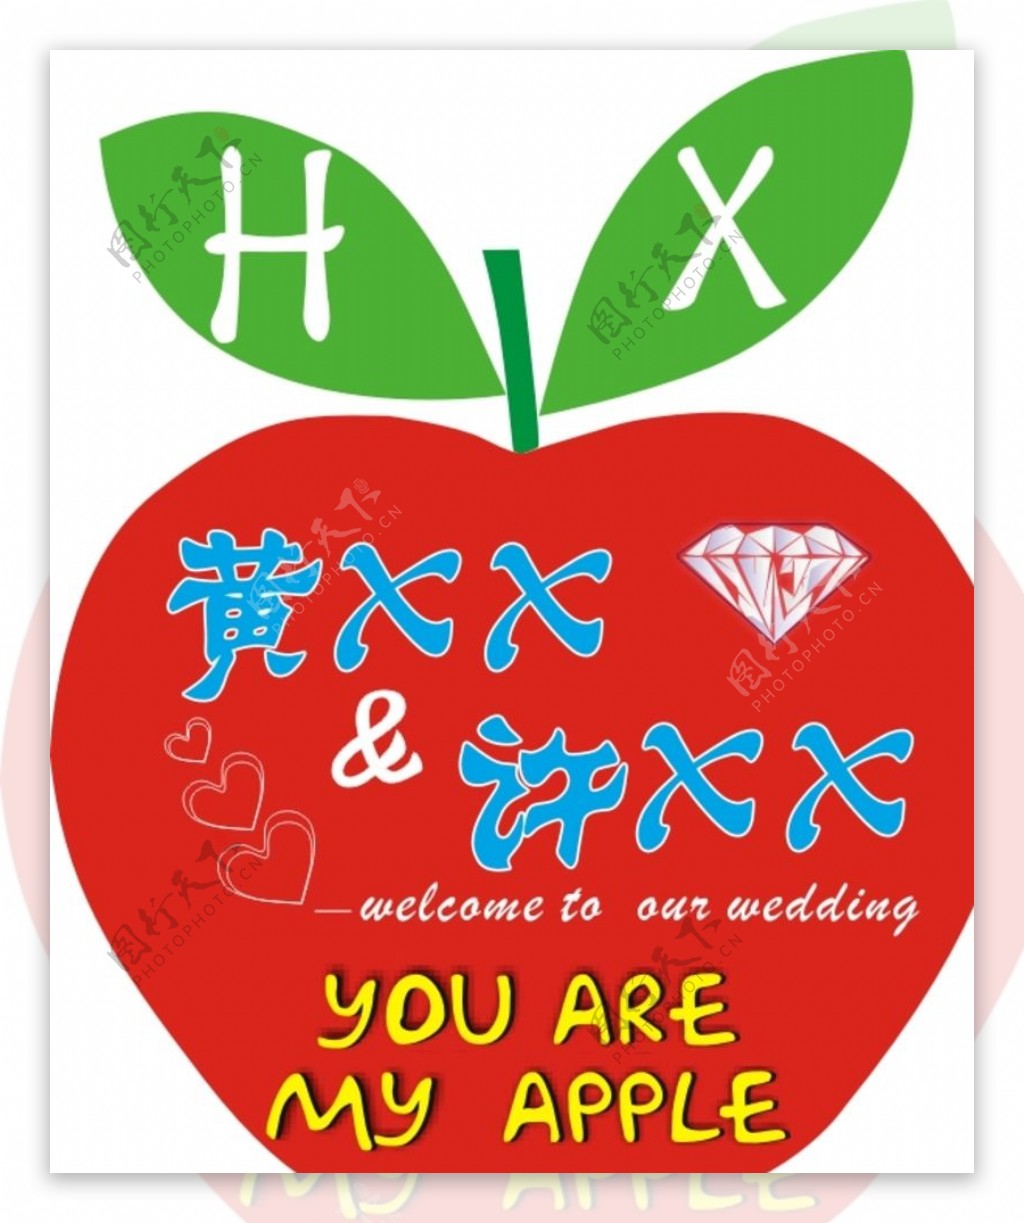 小苹果婚礼logo图片